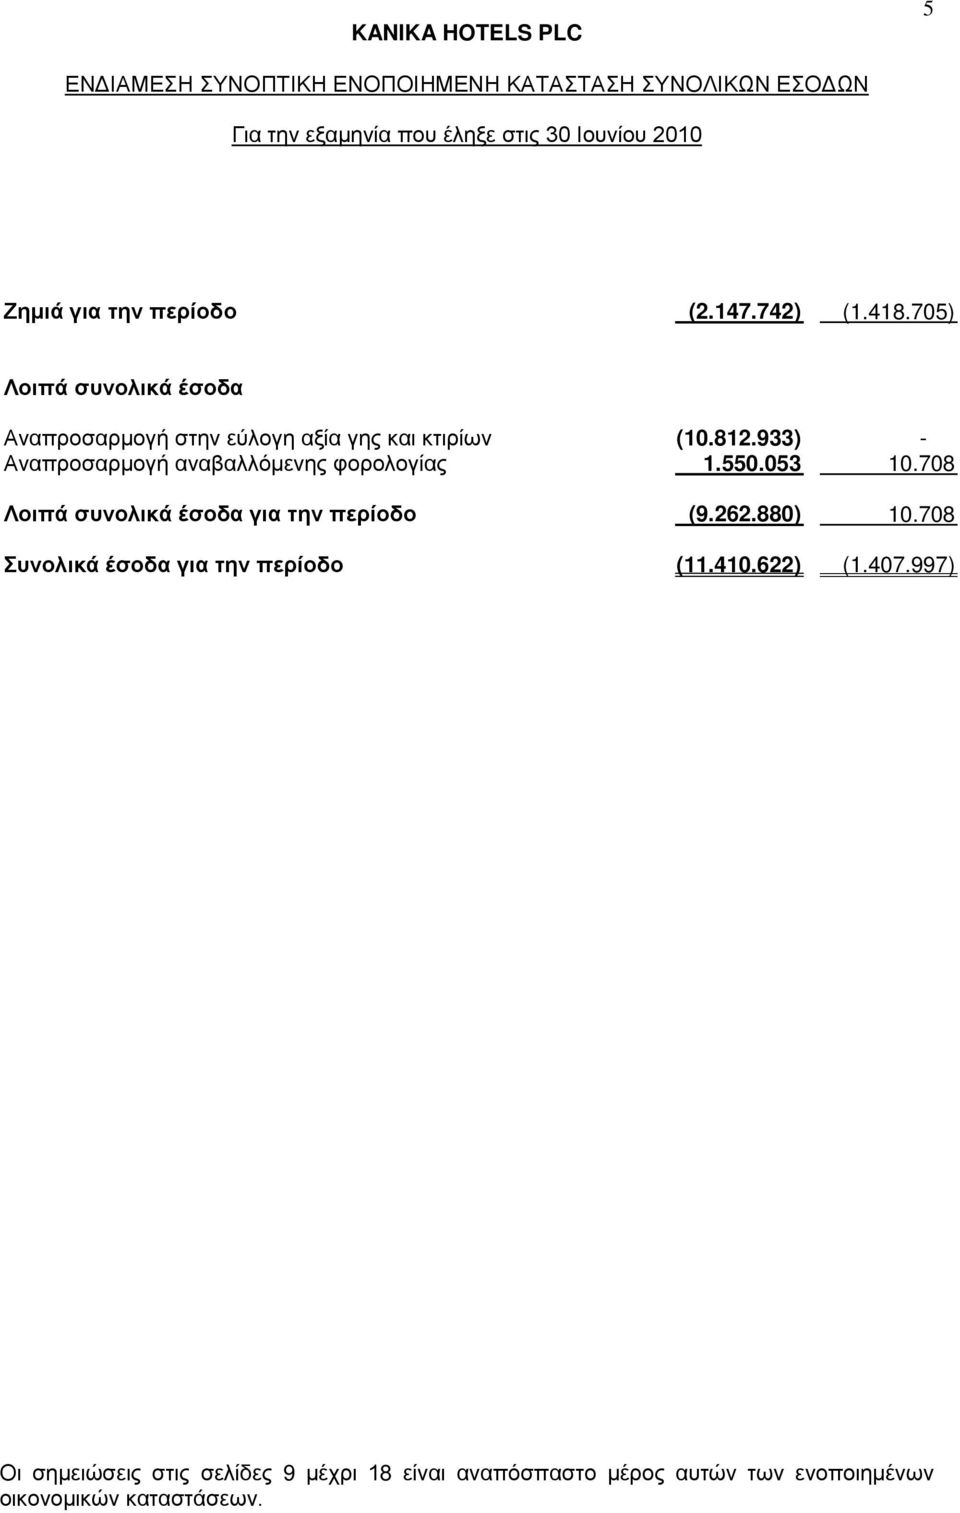 933) - Αναπροσαρμογή αναβαλλόμενης φορολογίας 1.550.053 10.708 Λοιπά συνολικά έσοδα για την περίοδο (9.262.880) 10.